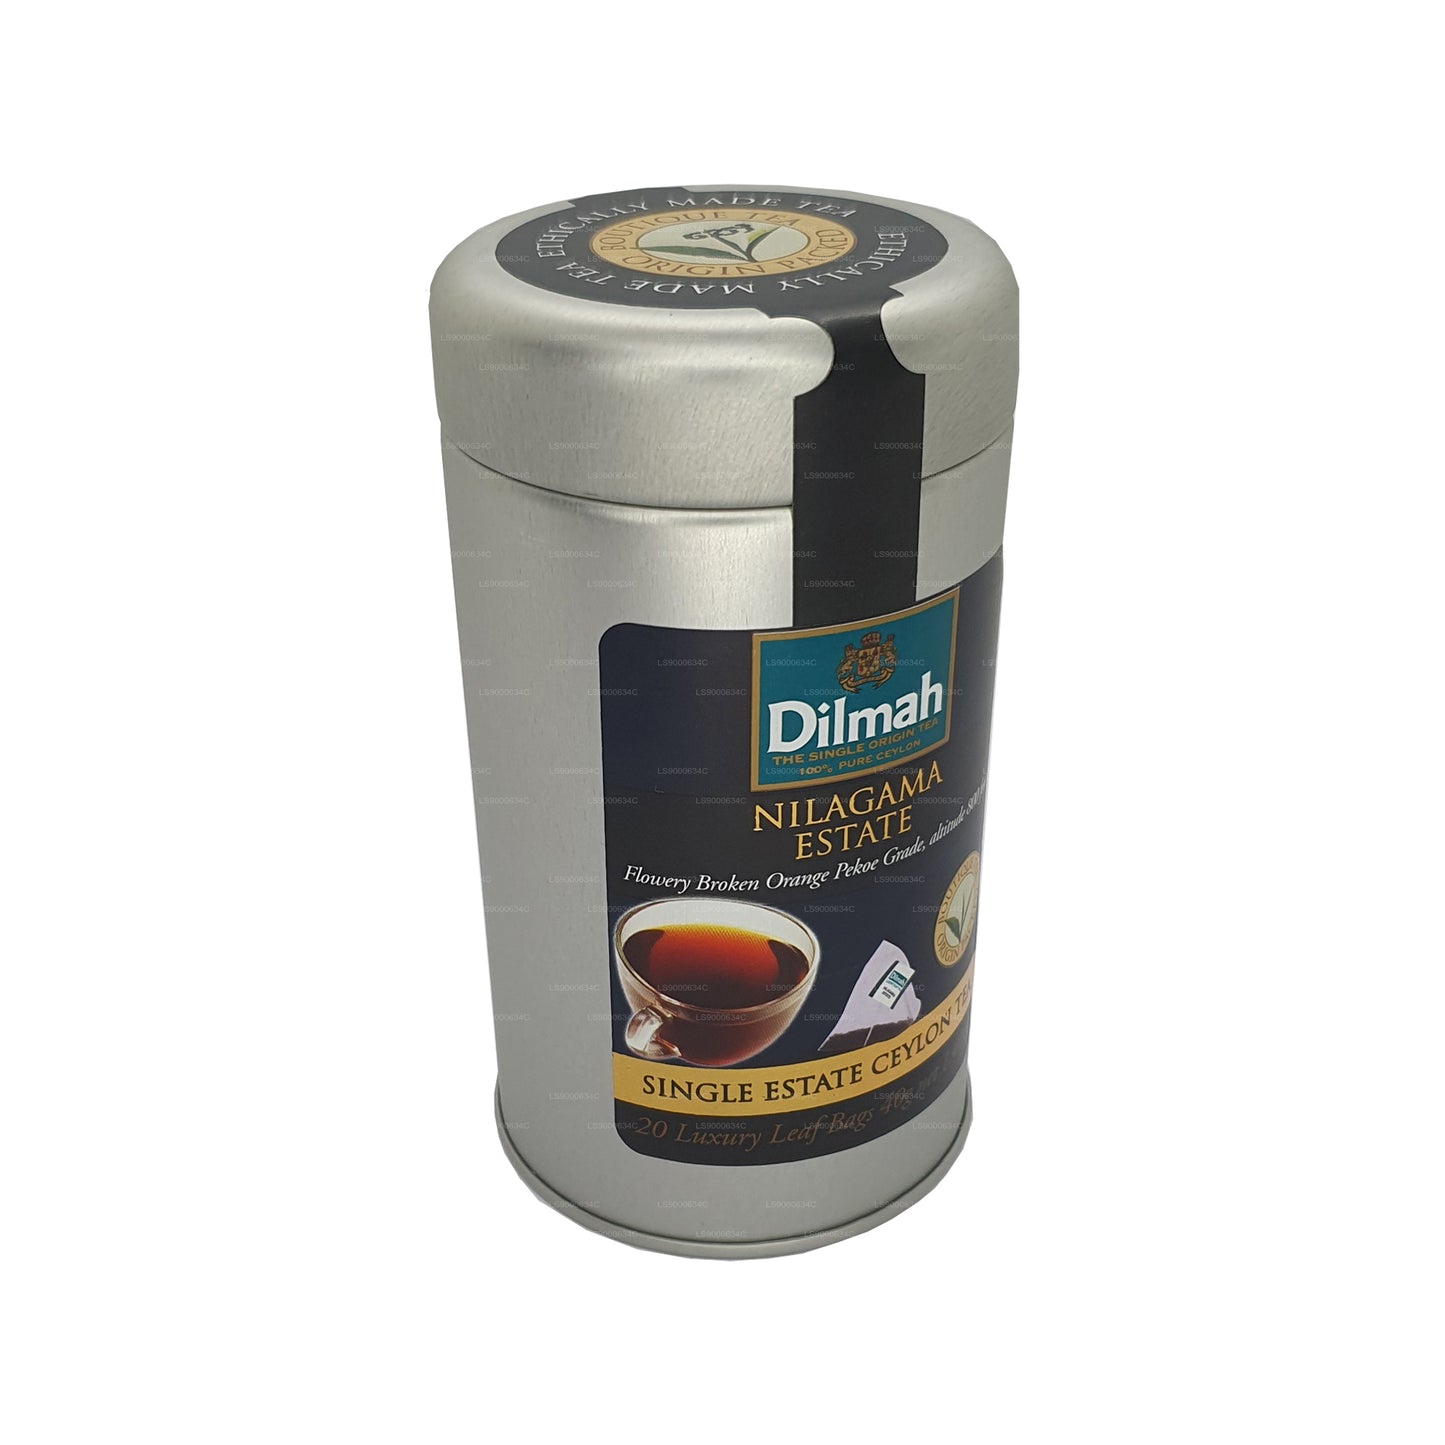 شاي ديلما نيلاغاما للاستخدام الفردي (40 جم) 20 كيس شاي